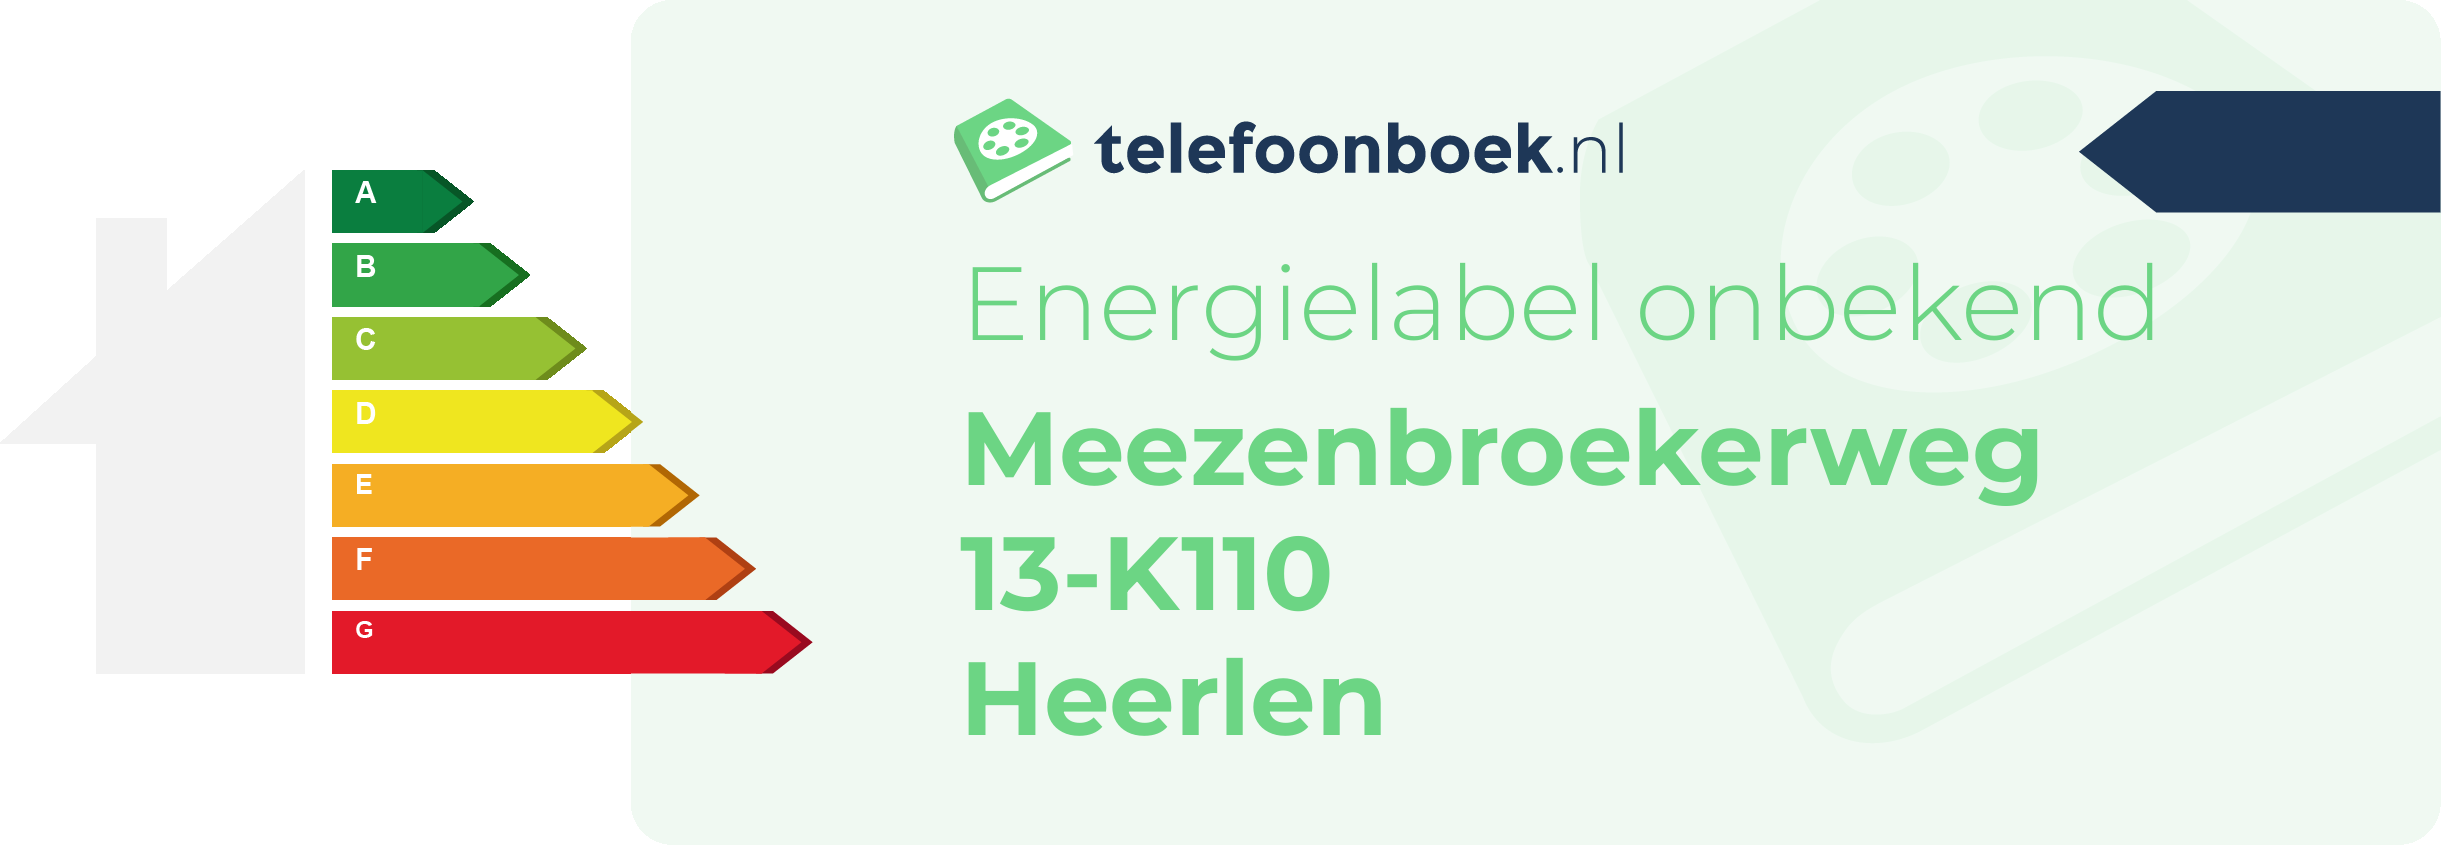 Energielabel Meezenbroekerweg 13-K110 Heerlen